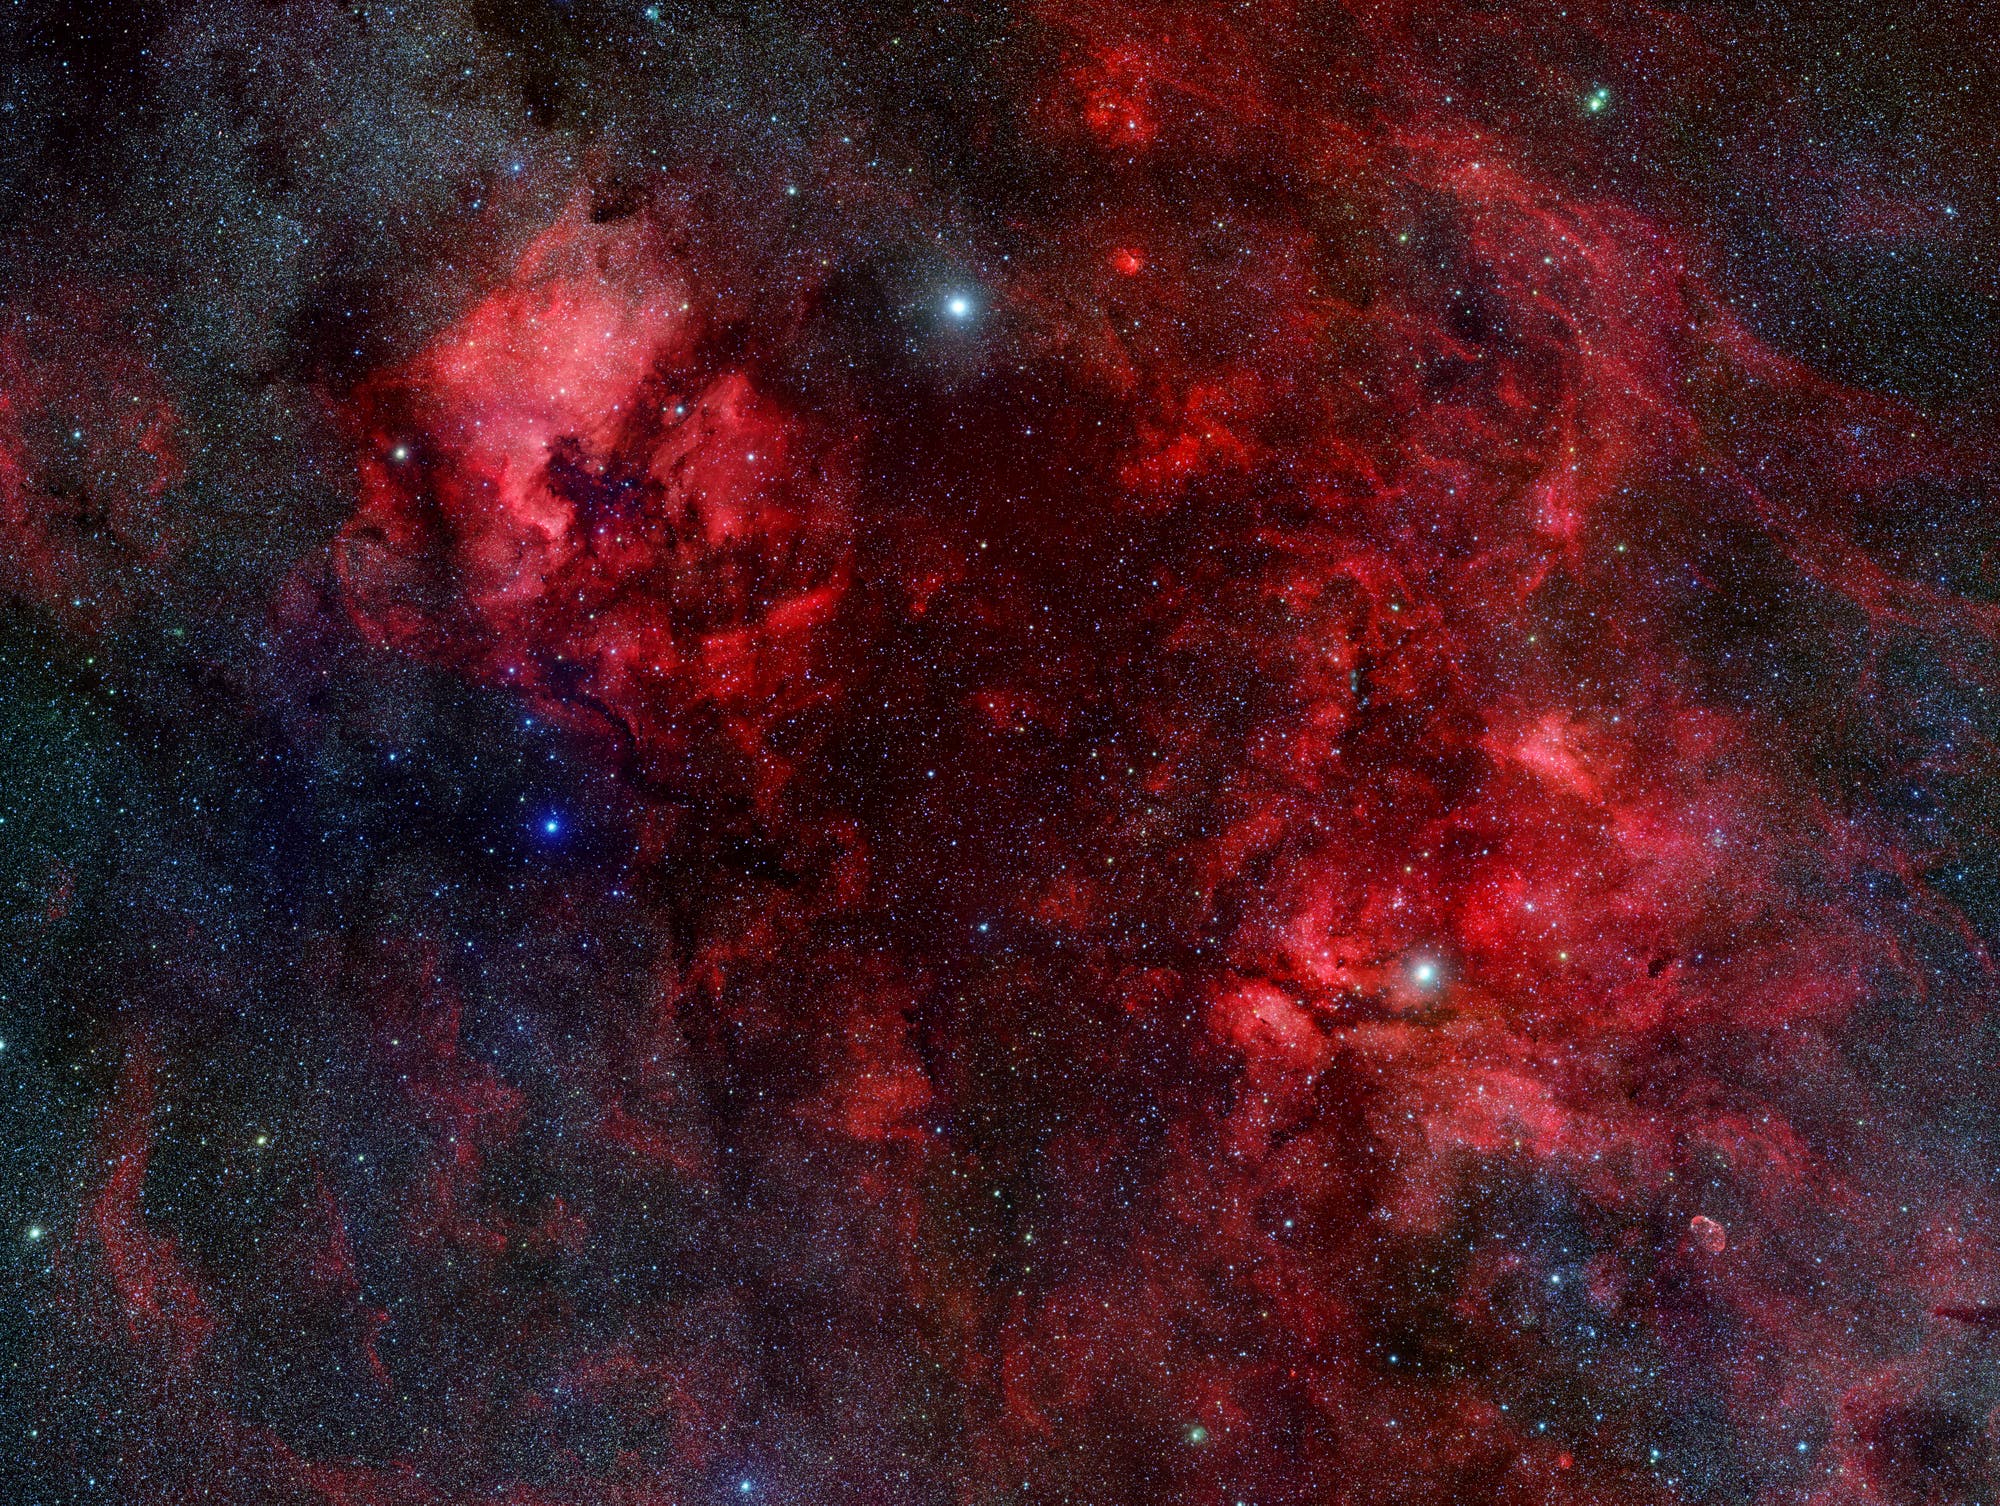 Der Cygnus-Nebelkomplex im Sternbild Schwan (Übersichtsbild)